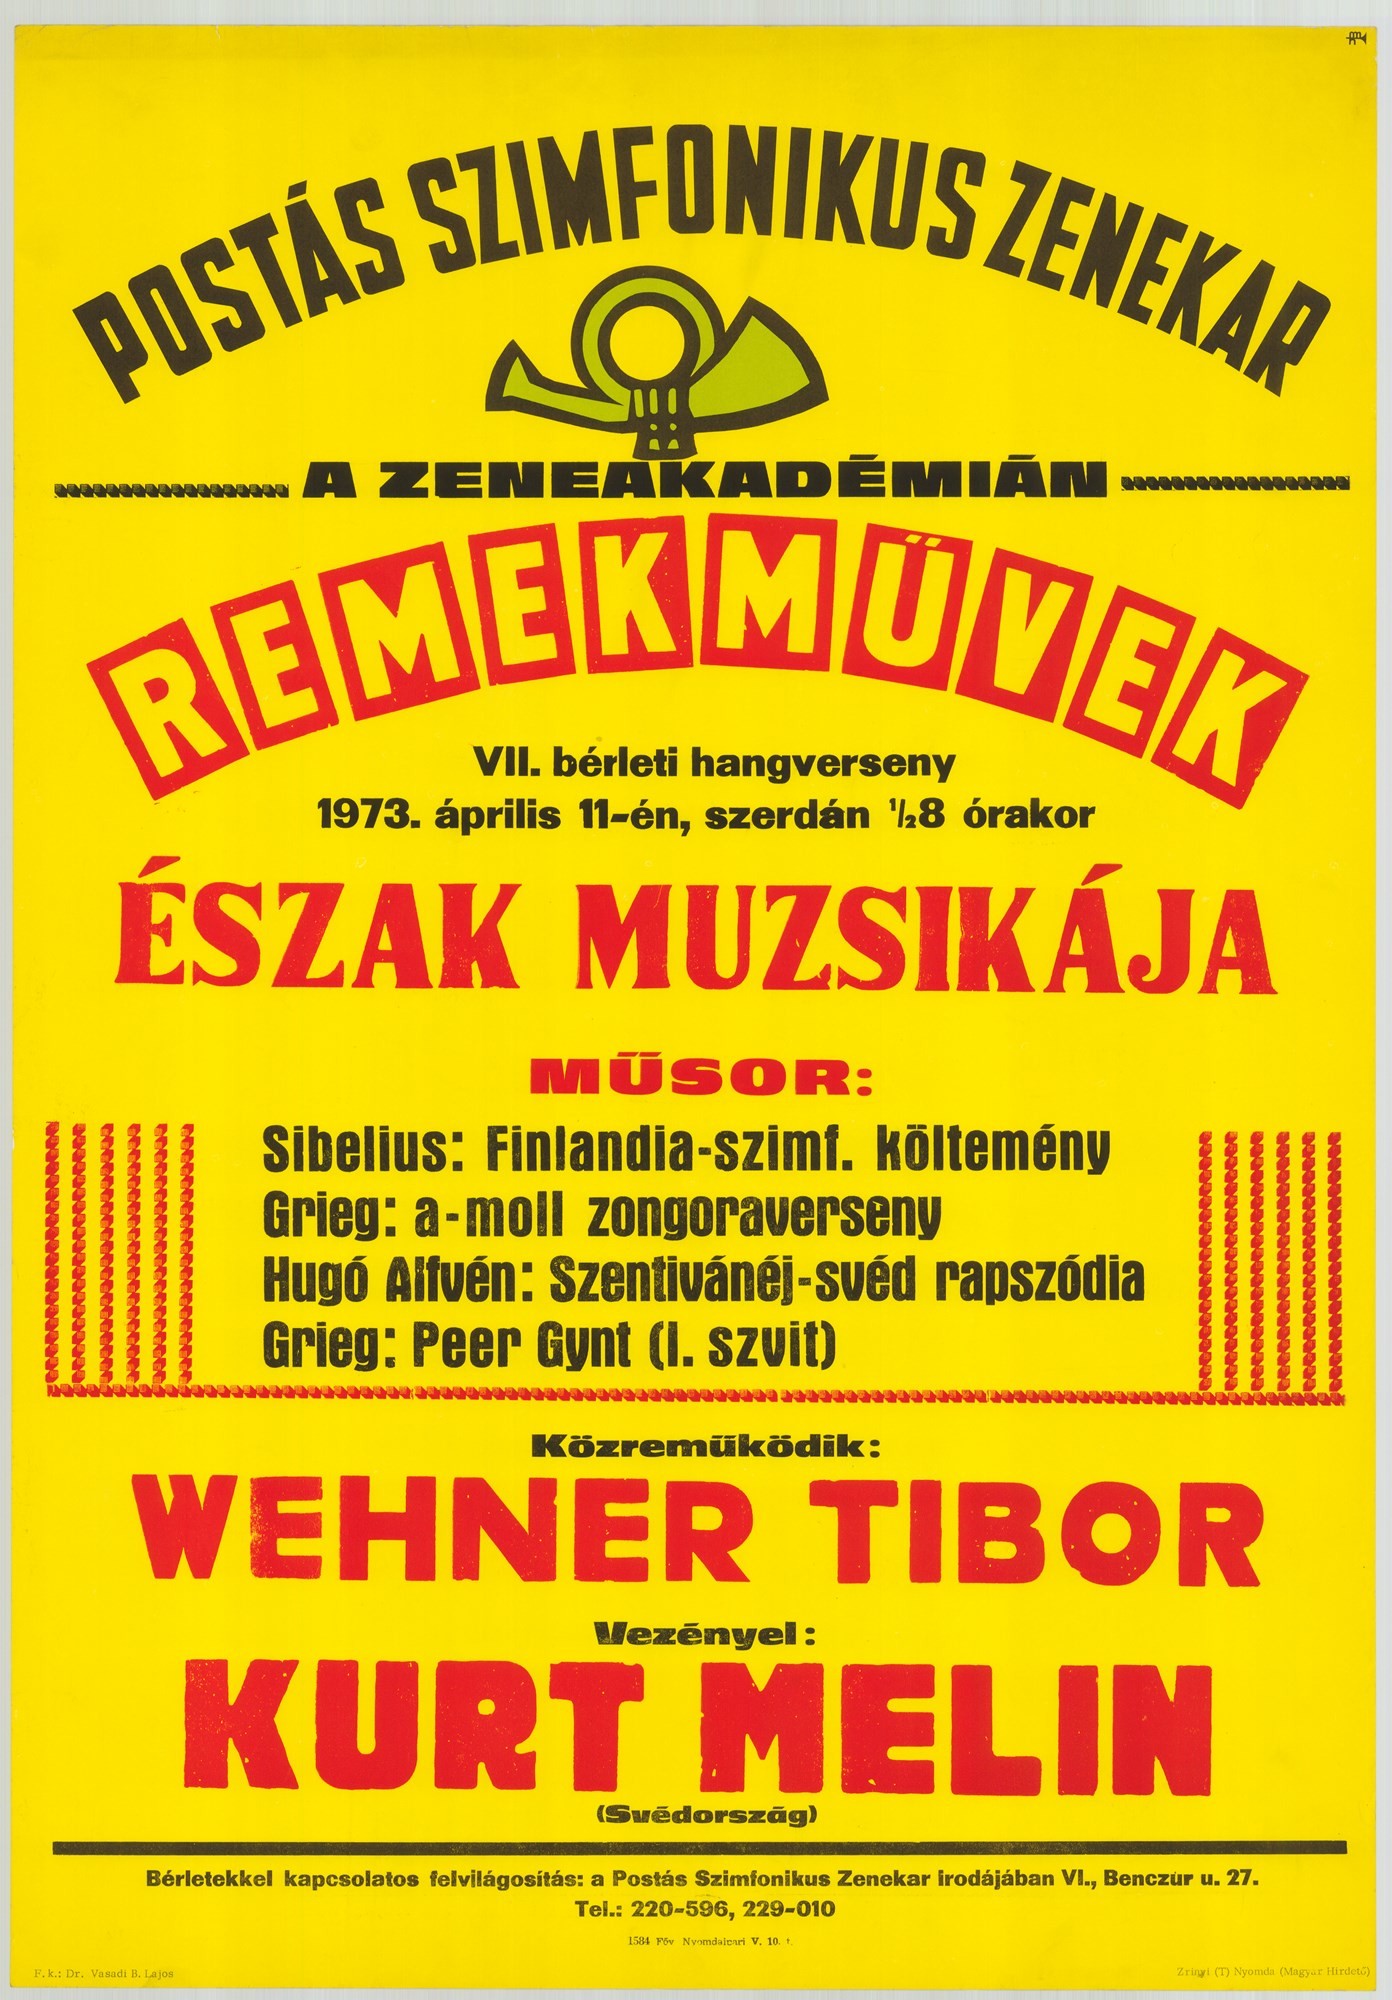 Plakát - Postás Szimfonikus Zenekar a Zeneakadémián, 1973 (Postamúzeum CC BY-NC-SA)